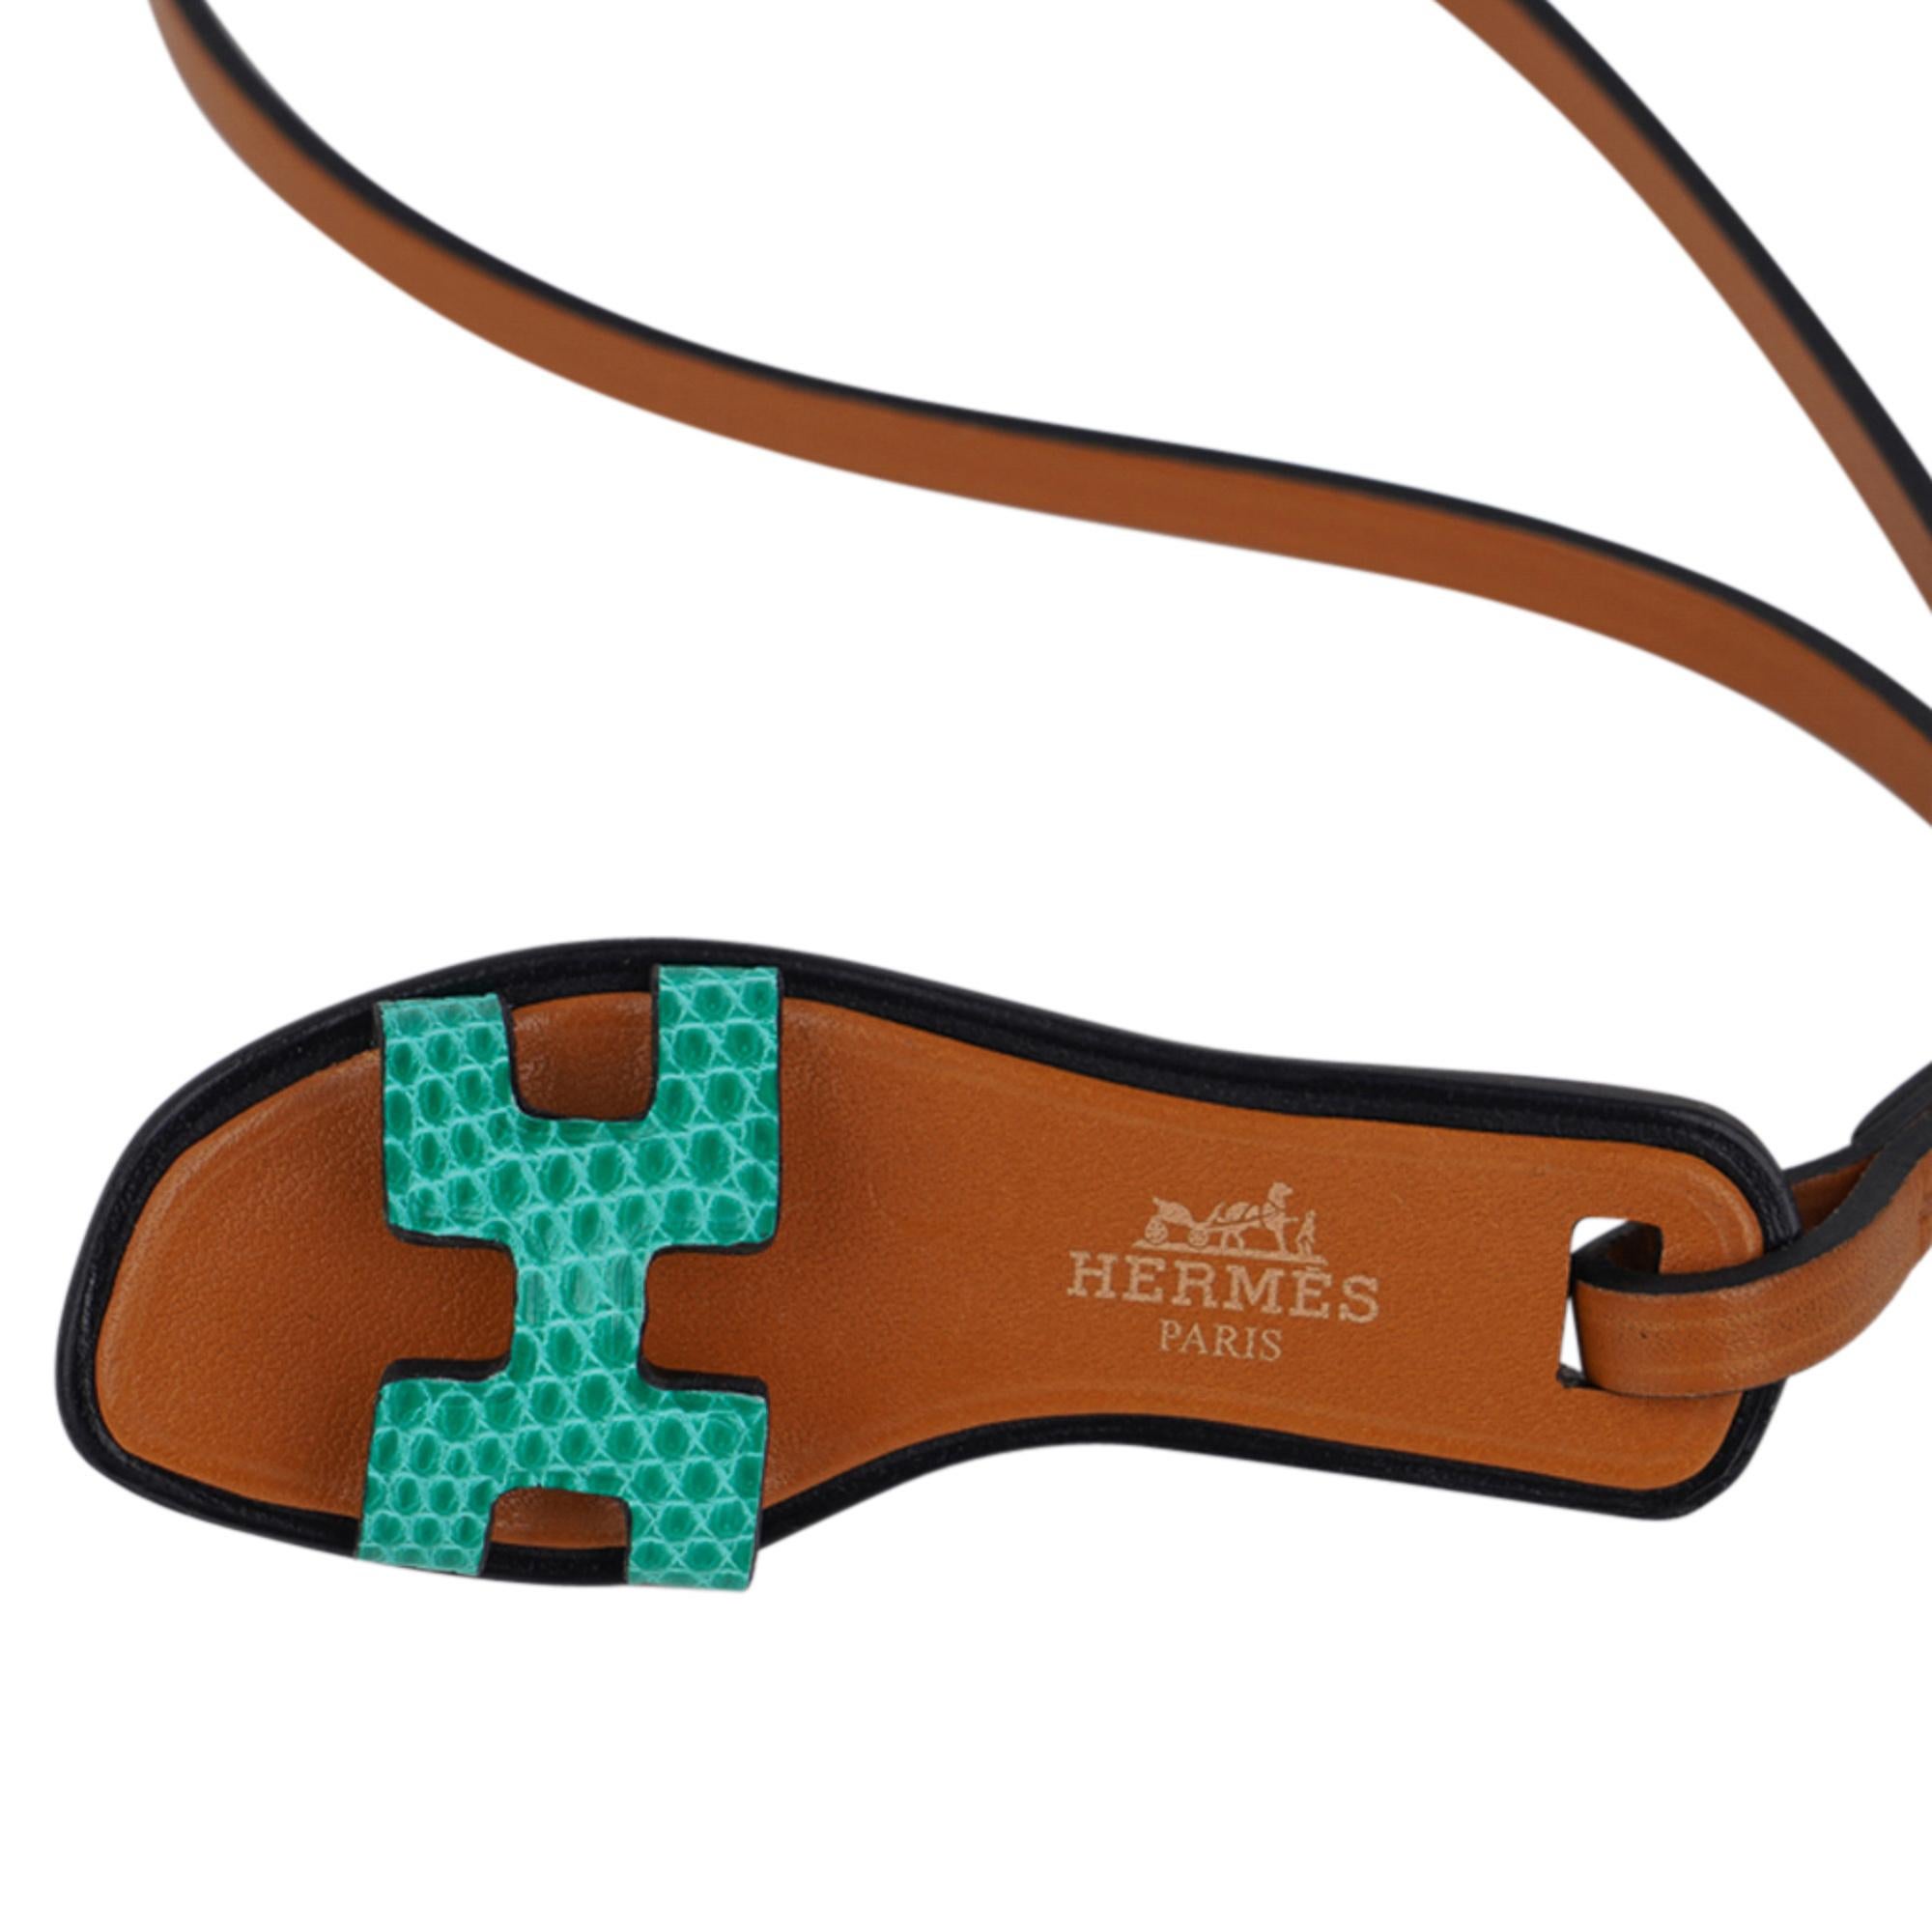 Mightychic bietet eine garantiert authentische Hermes Oran Nano Tasche Charme in frischen grünen Eidechse vorgestellt.
Charmant und verspielt schmückt sie mühelos eine Vielzahl von Taschenfarben in Ihrer fabelhaften Kollektion.
Hermes Paris